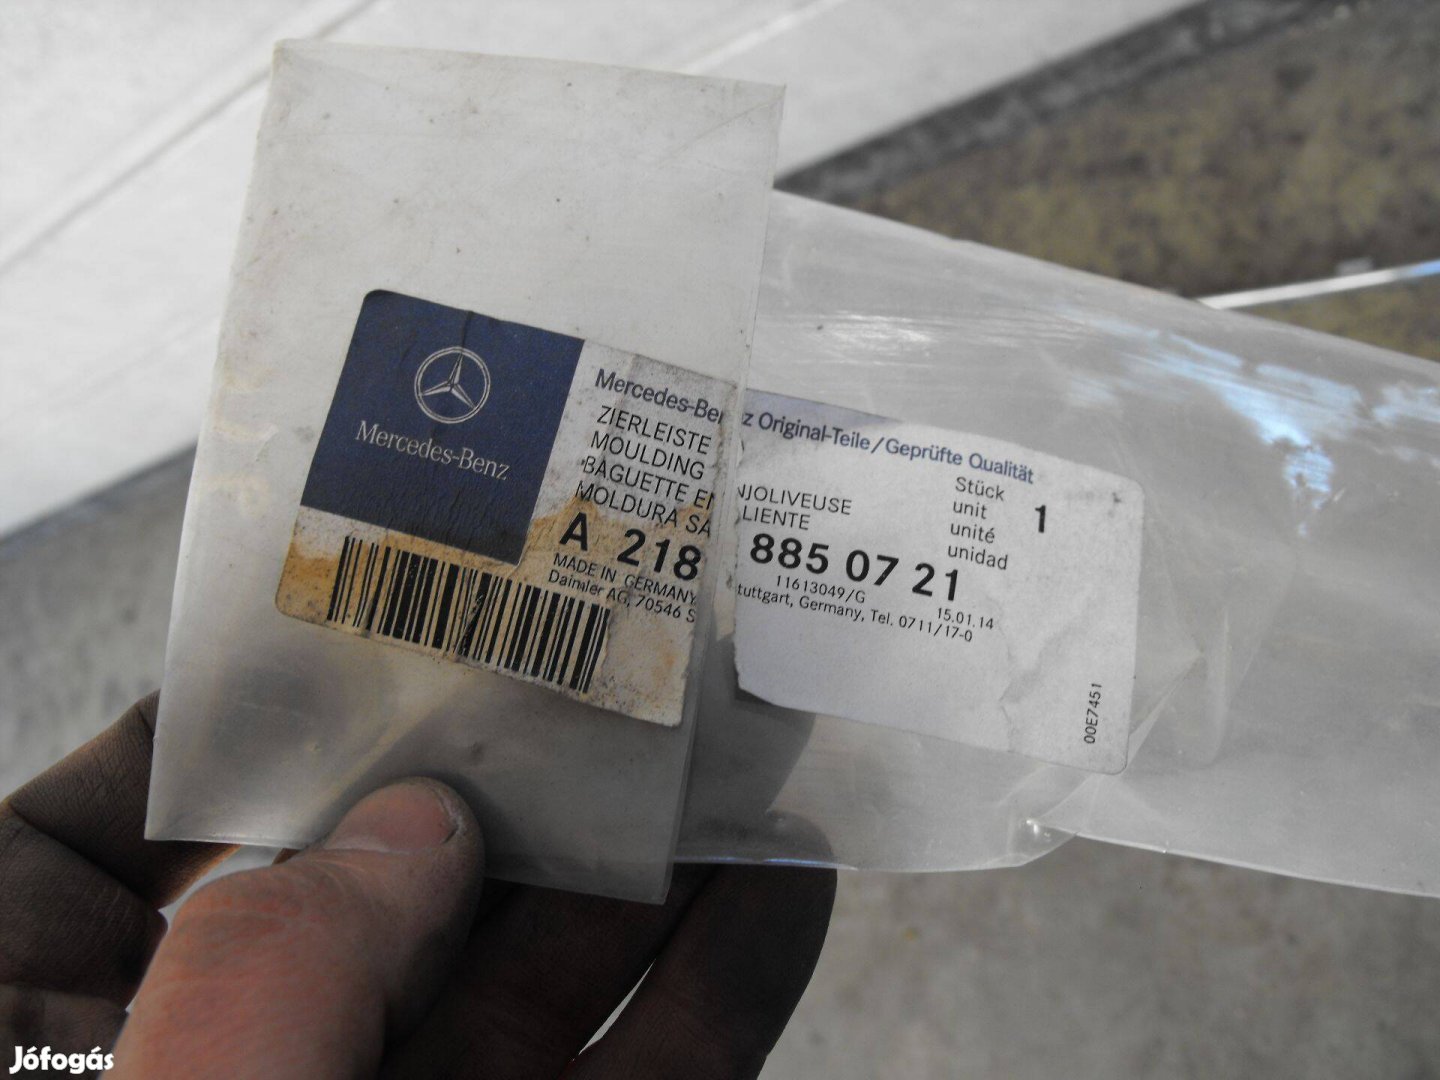 Mercedes CLS C218 gyári első középső krómléc krómcsík A 218 885 07 21